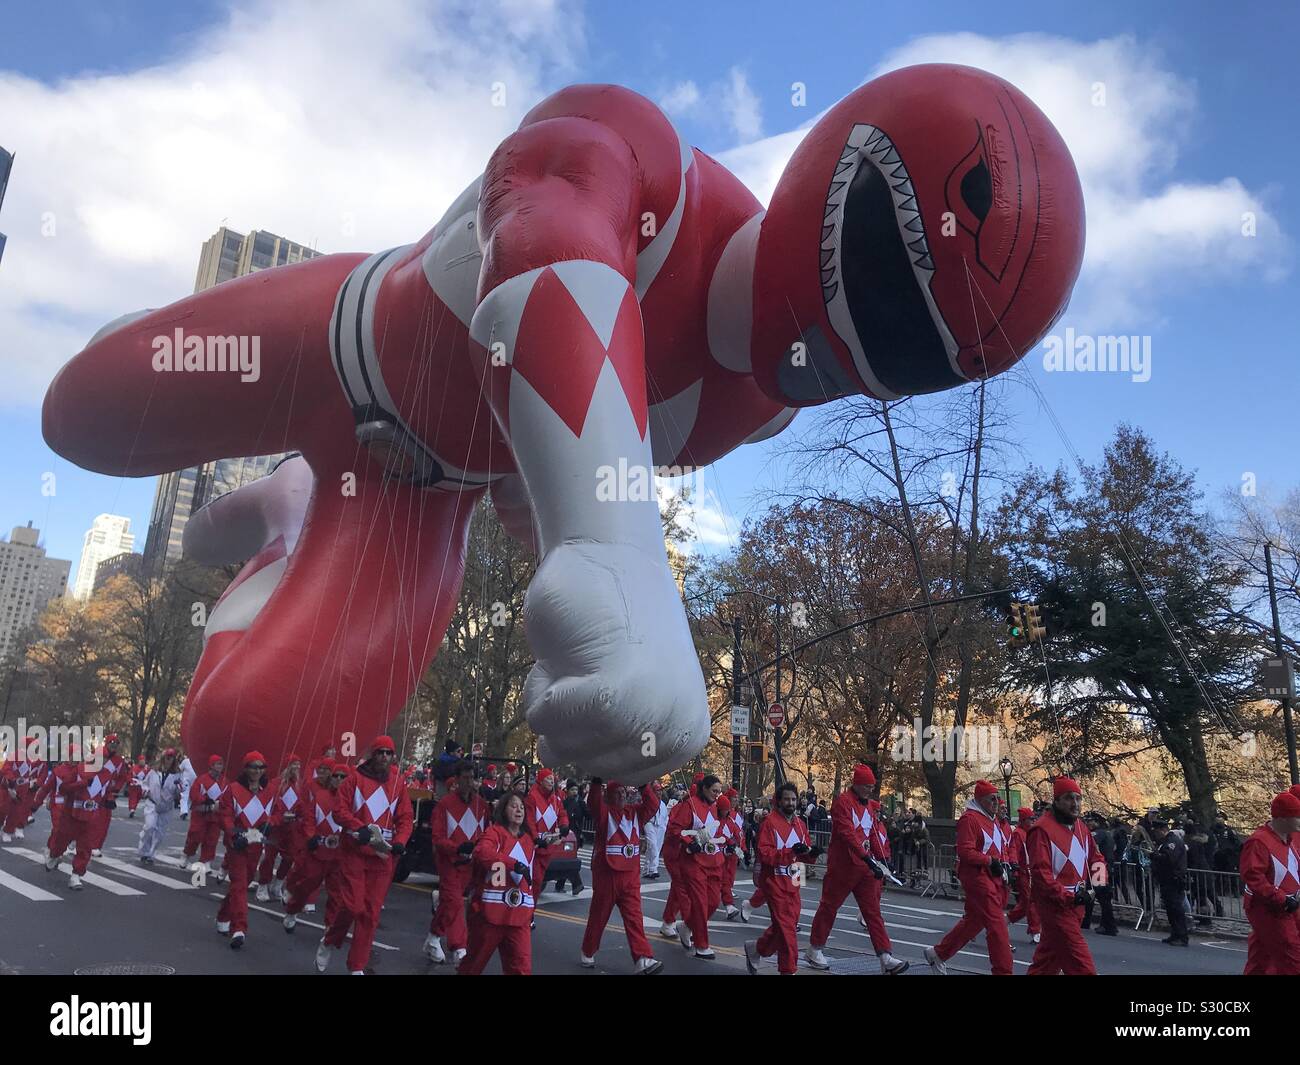 NYC, NY, USA. November 28, 2019. Power Rangers balloon flies in the Macy’s Thanksgiving Day Parade. Stock Photo